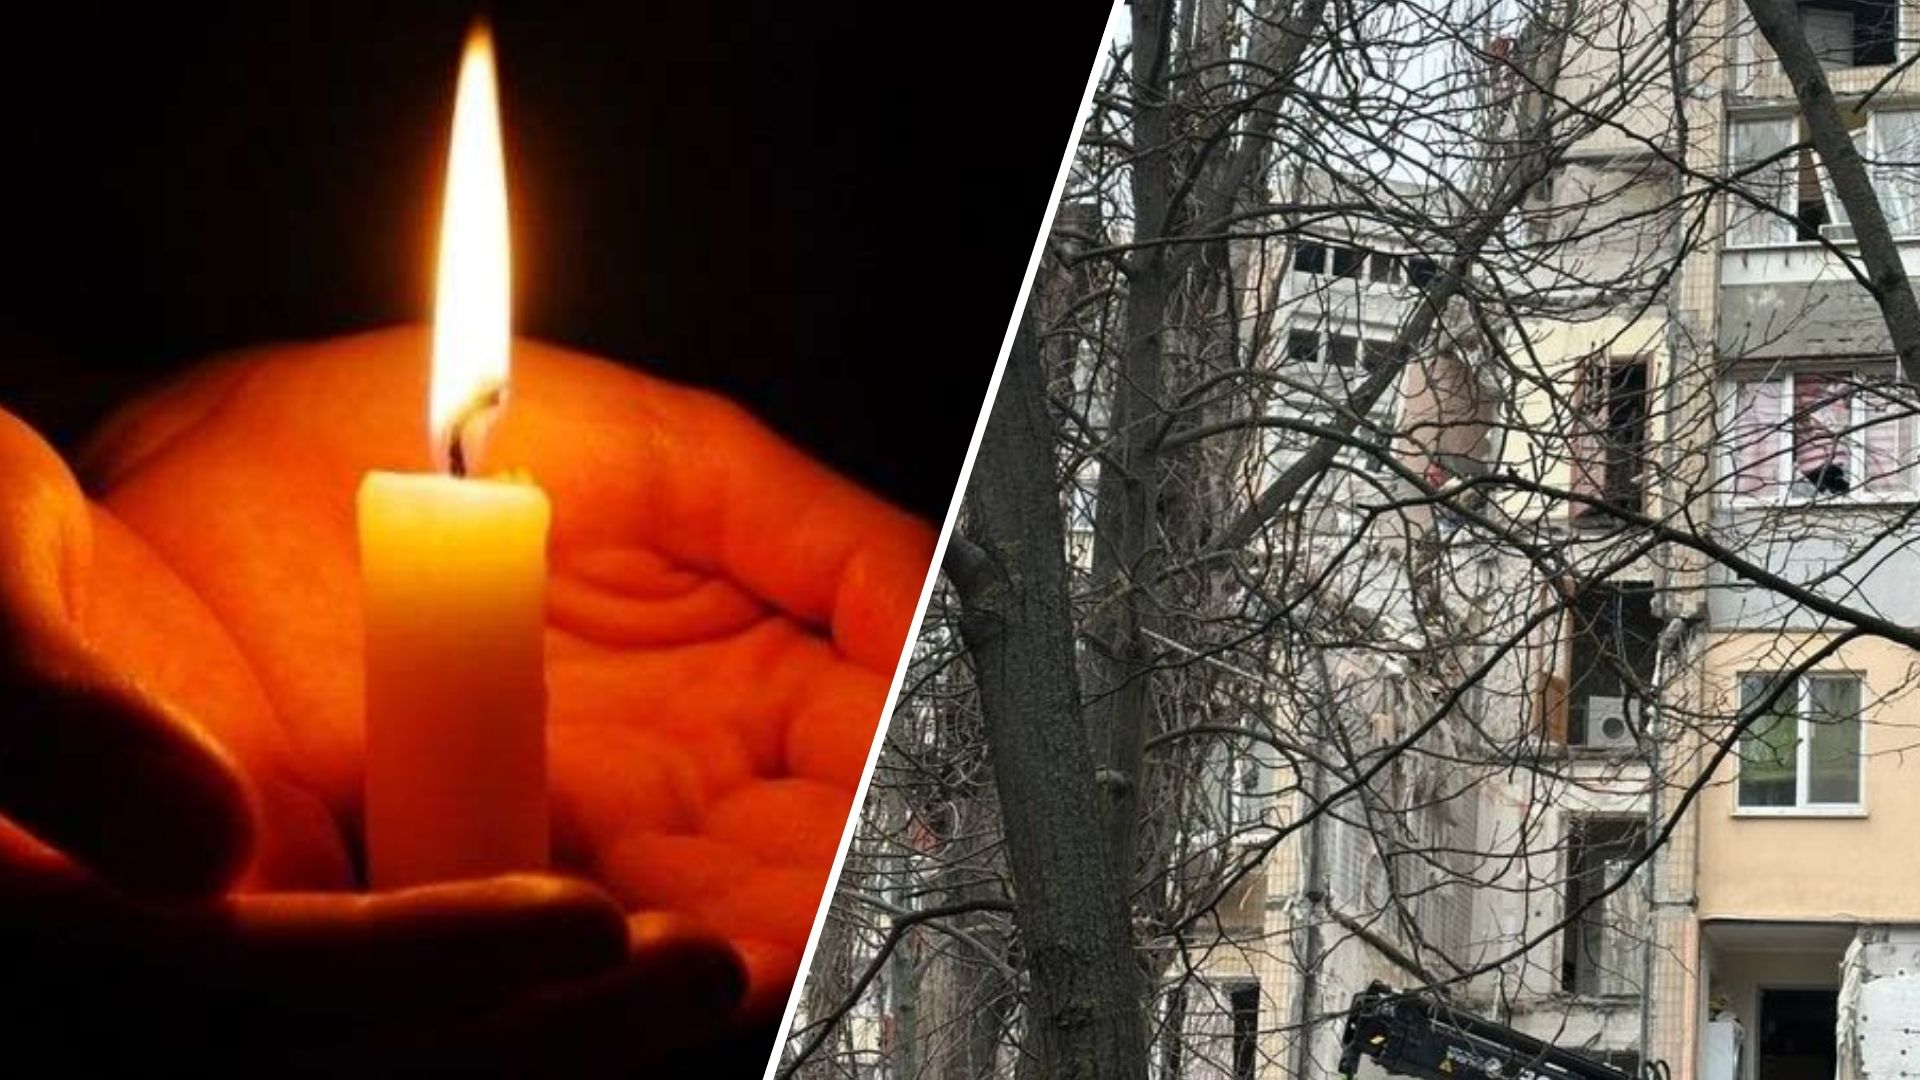 Odesszában egy nagy katonai családot öltek meg egy orosz terrortámadás következtében. A mentők egy férfit találtak feleségével és egy gyermekével a romok alatt.